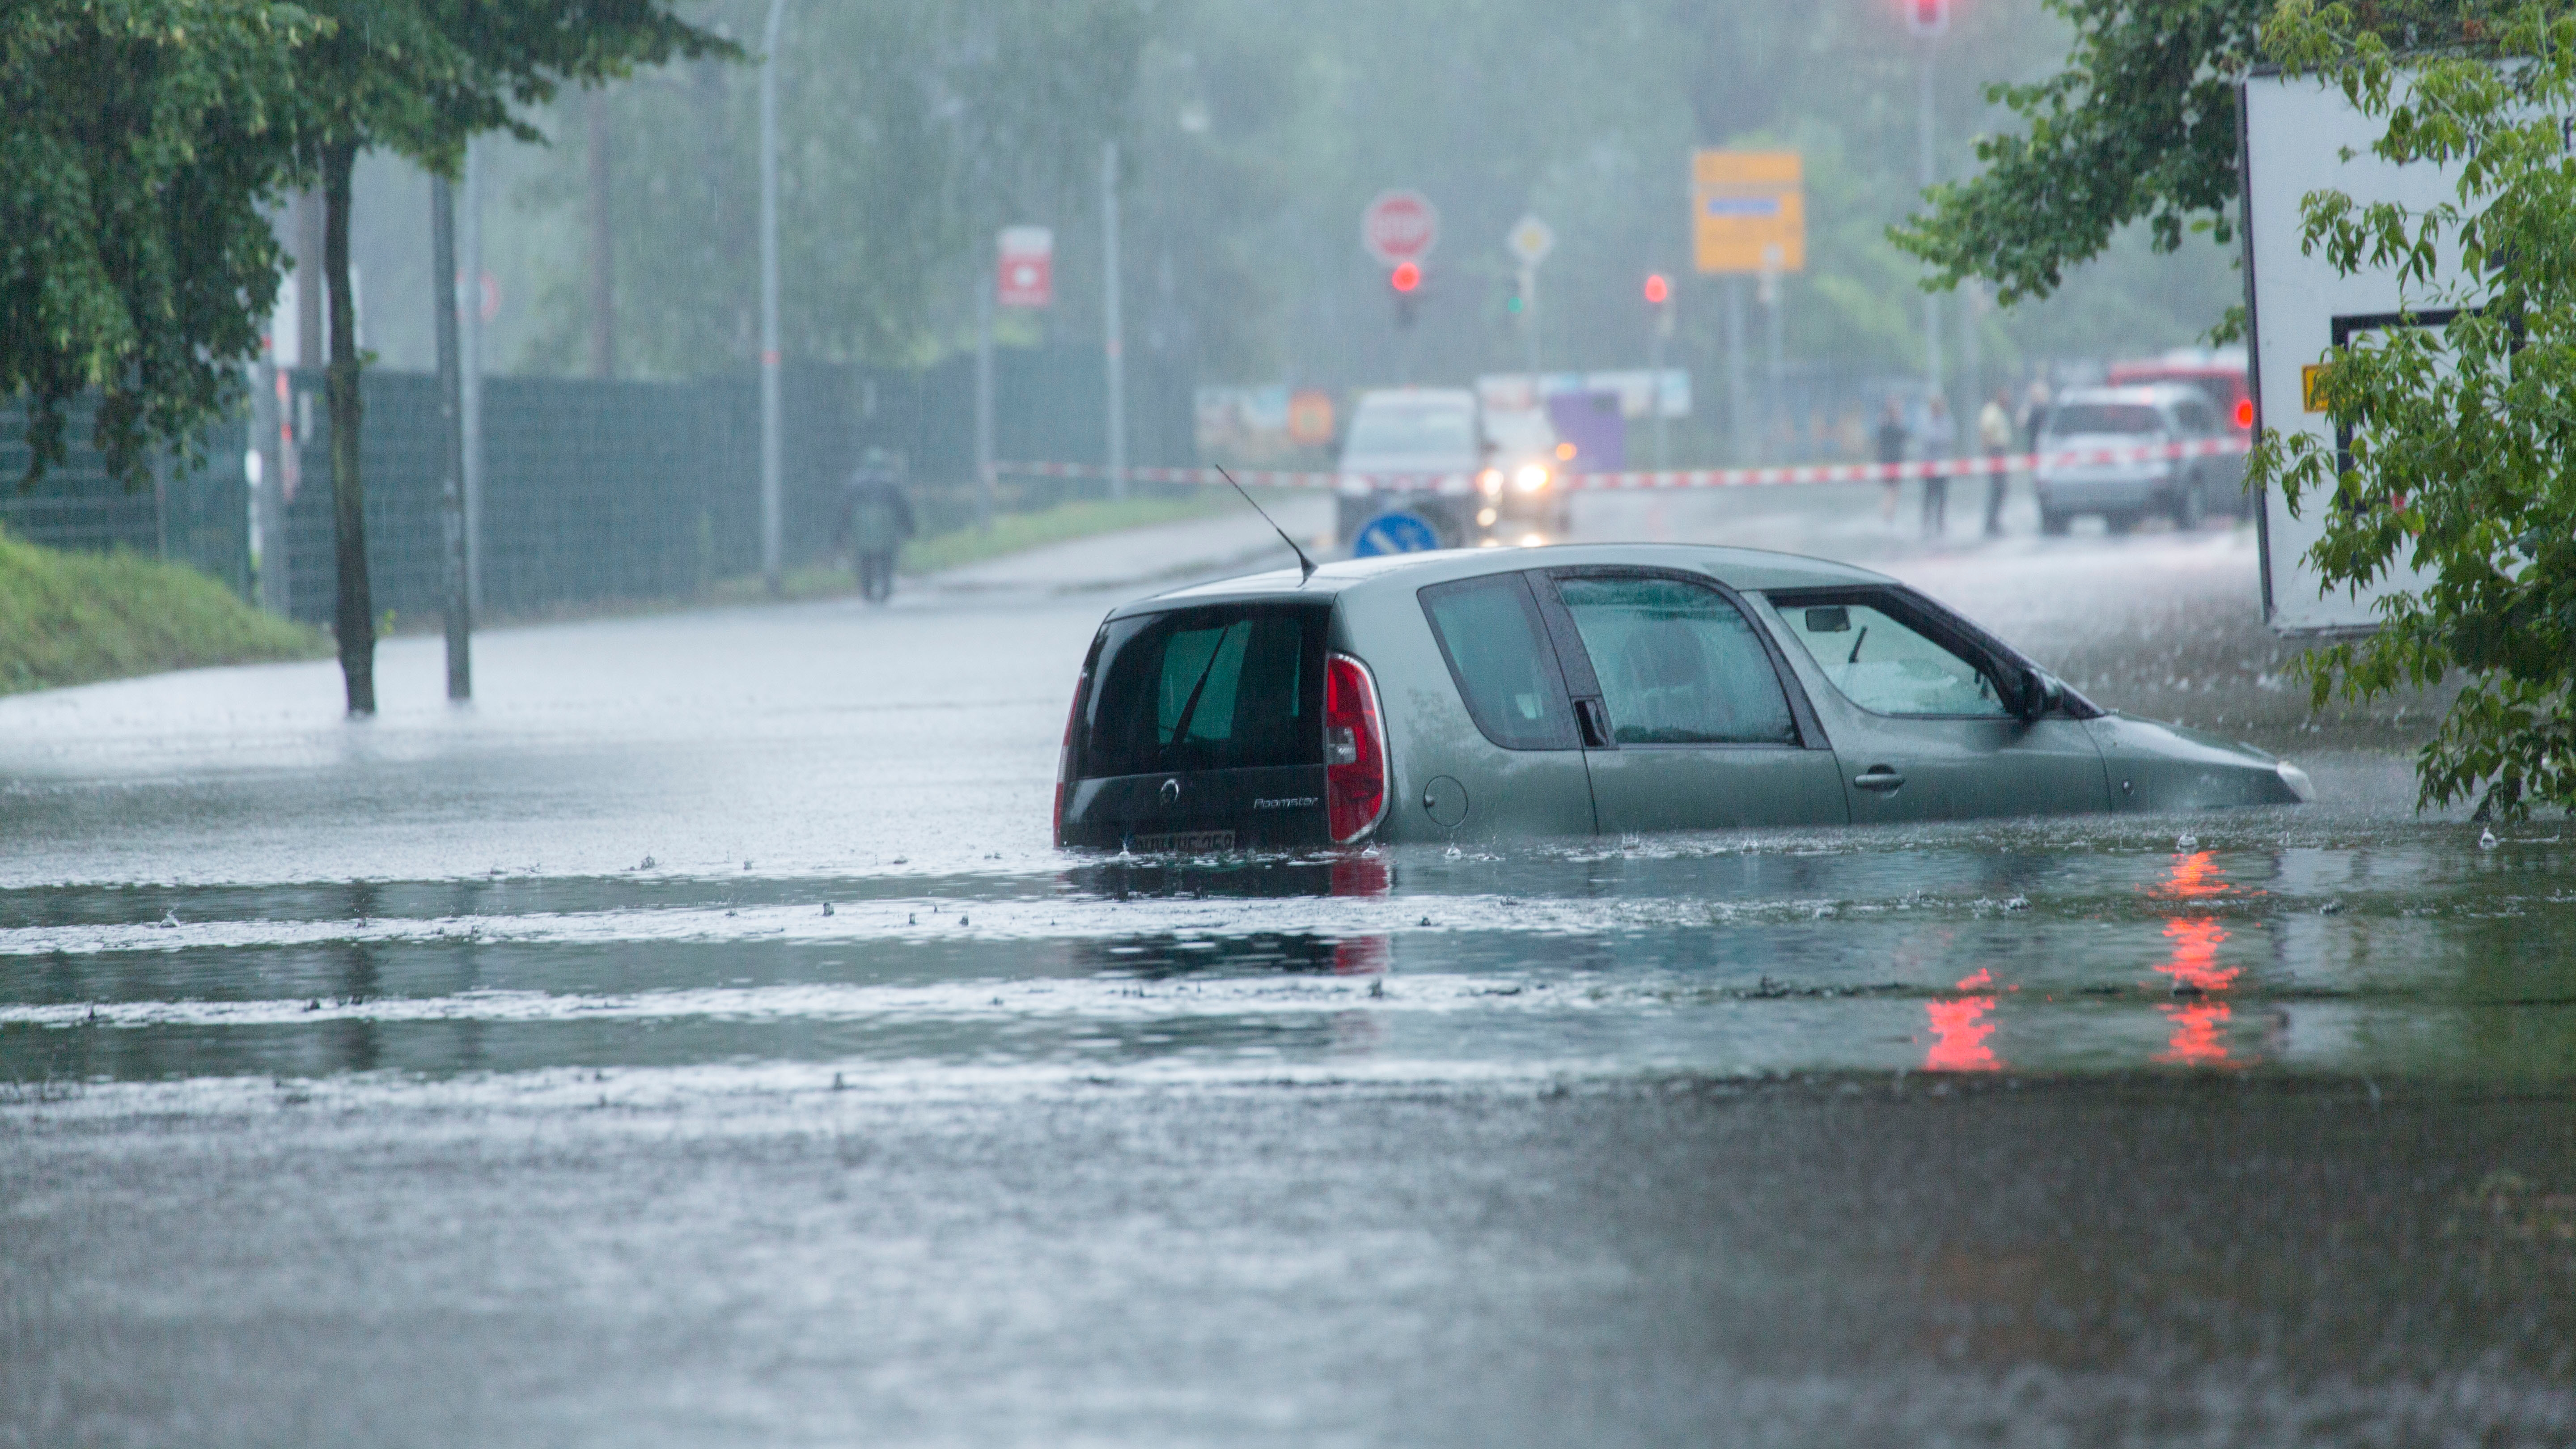 Überschwemmung: Kann man mit dem Auto durch überflutete Straßen